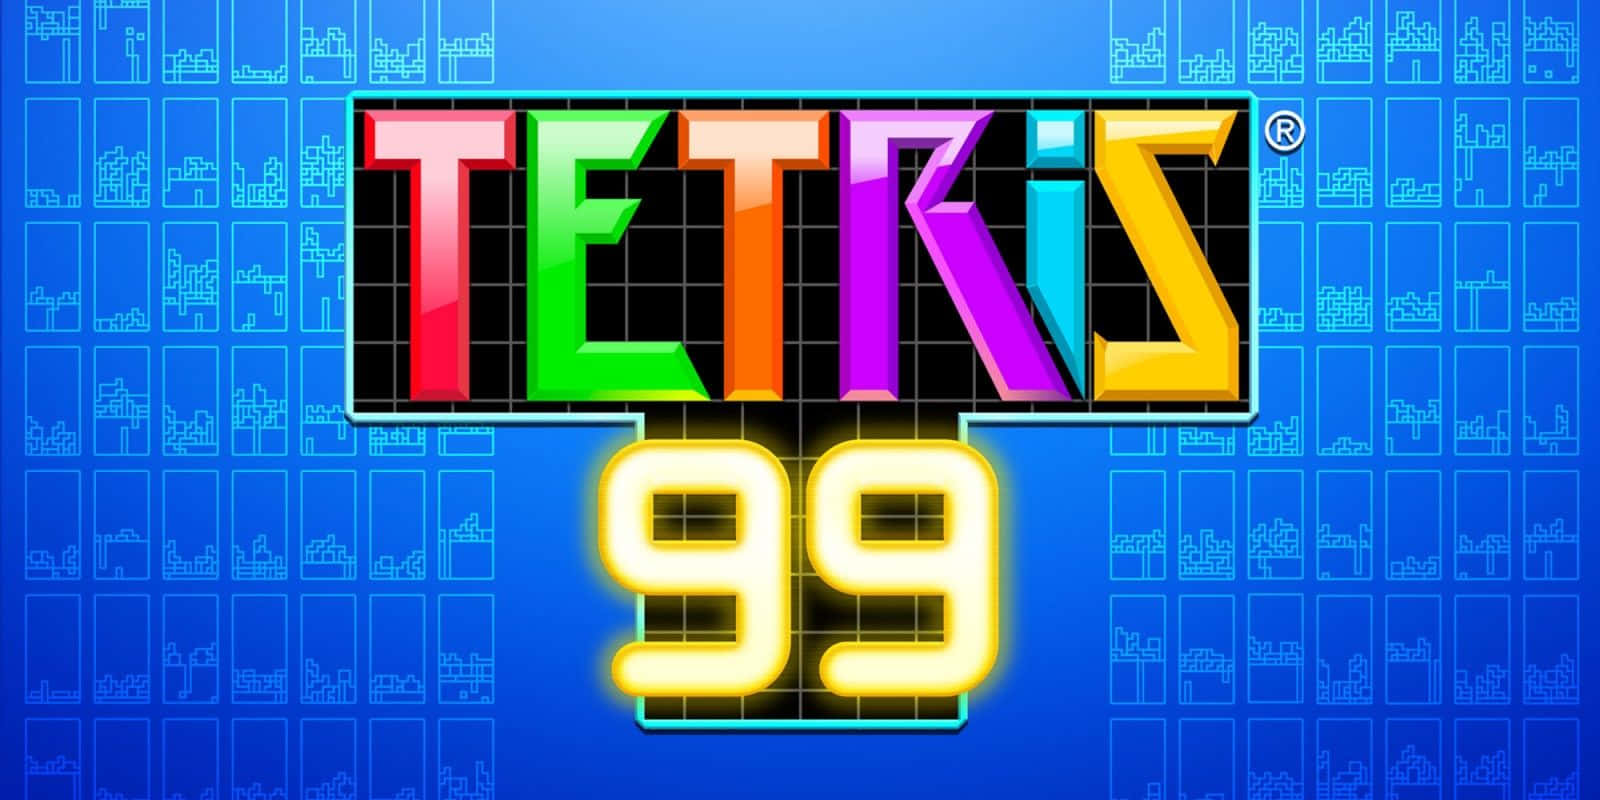 Tetrishintergrund 1600 X 800